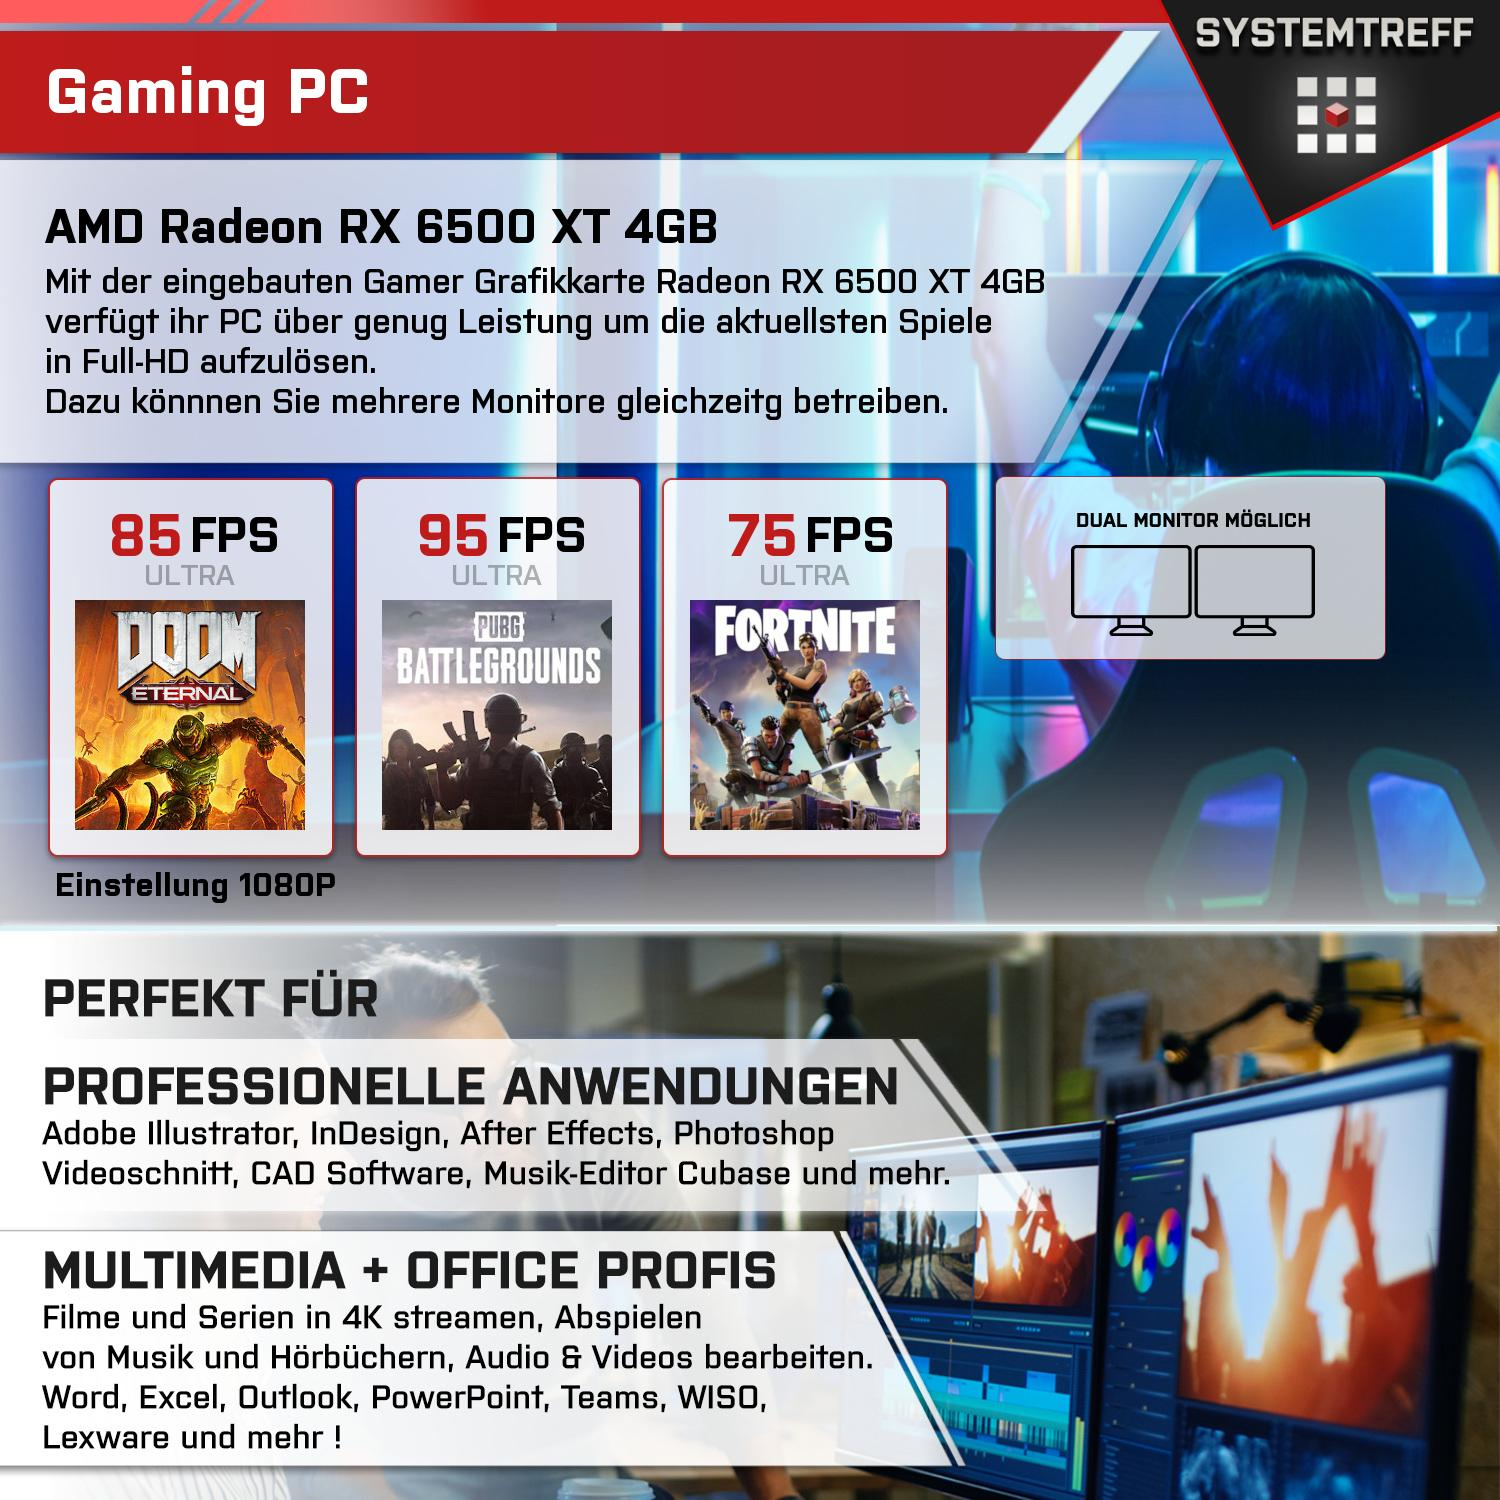 SYSTEMTREFF Gaming 7500F 512 Komplett Komplett PC RX GB Radeon AMD RAM, Ryzen Prozessor, GB AMD 16 mSSD, 7500F, GB mit 4 XT 5 4GB, 6500